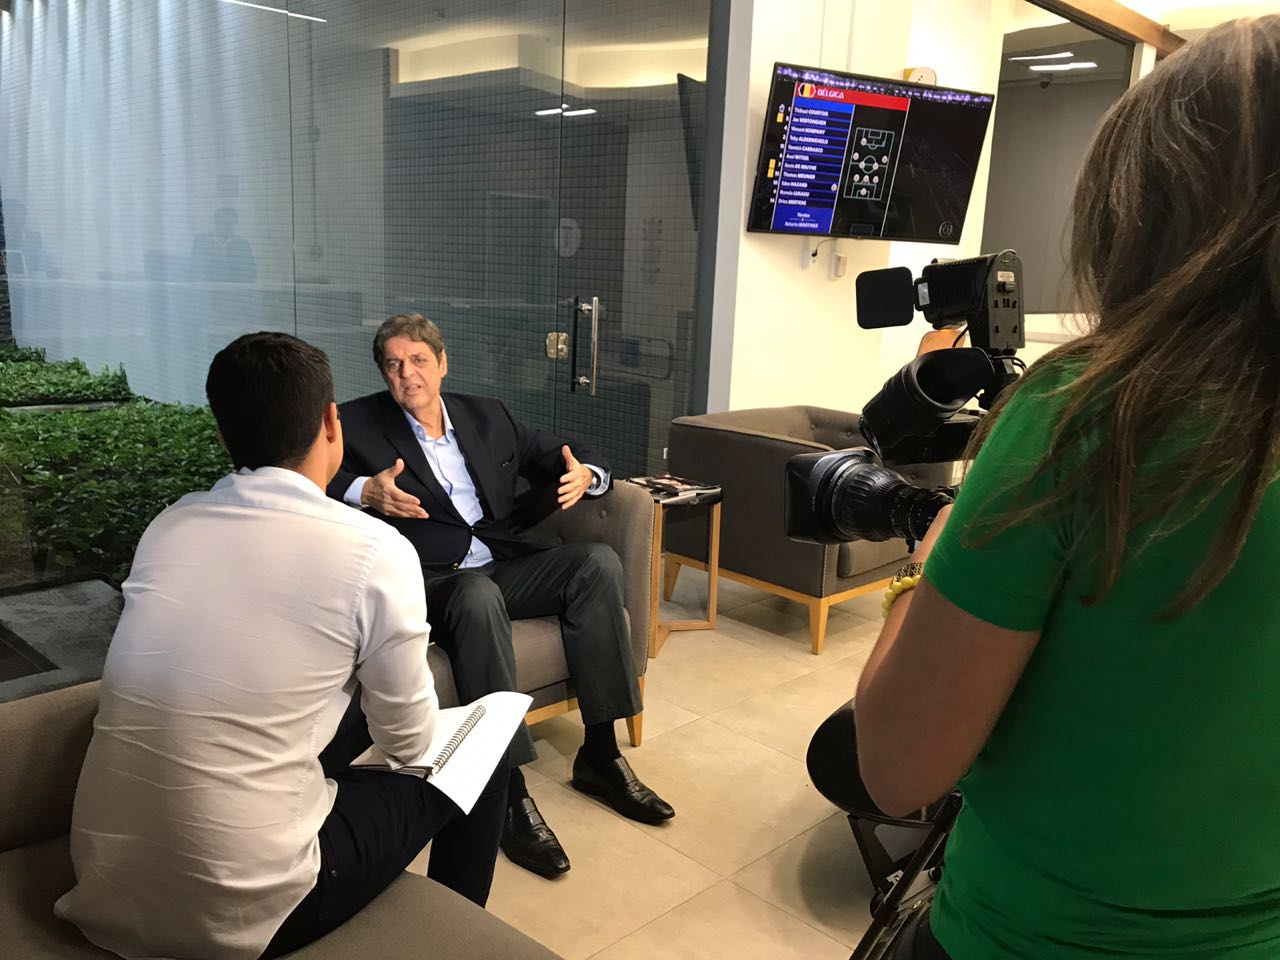 
Entrevista de Renato Cunha, Presidente do SINDAÇÚCAR/PE, sobre a possibilidade da venda direta de etanol hidratado aos postos, na sede da Rede Globo Nordeste, dia 02/julho/2018